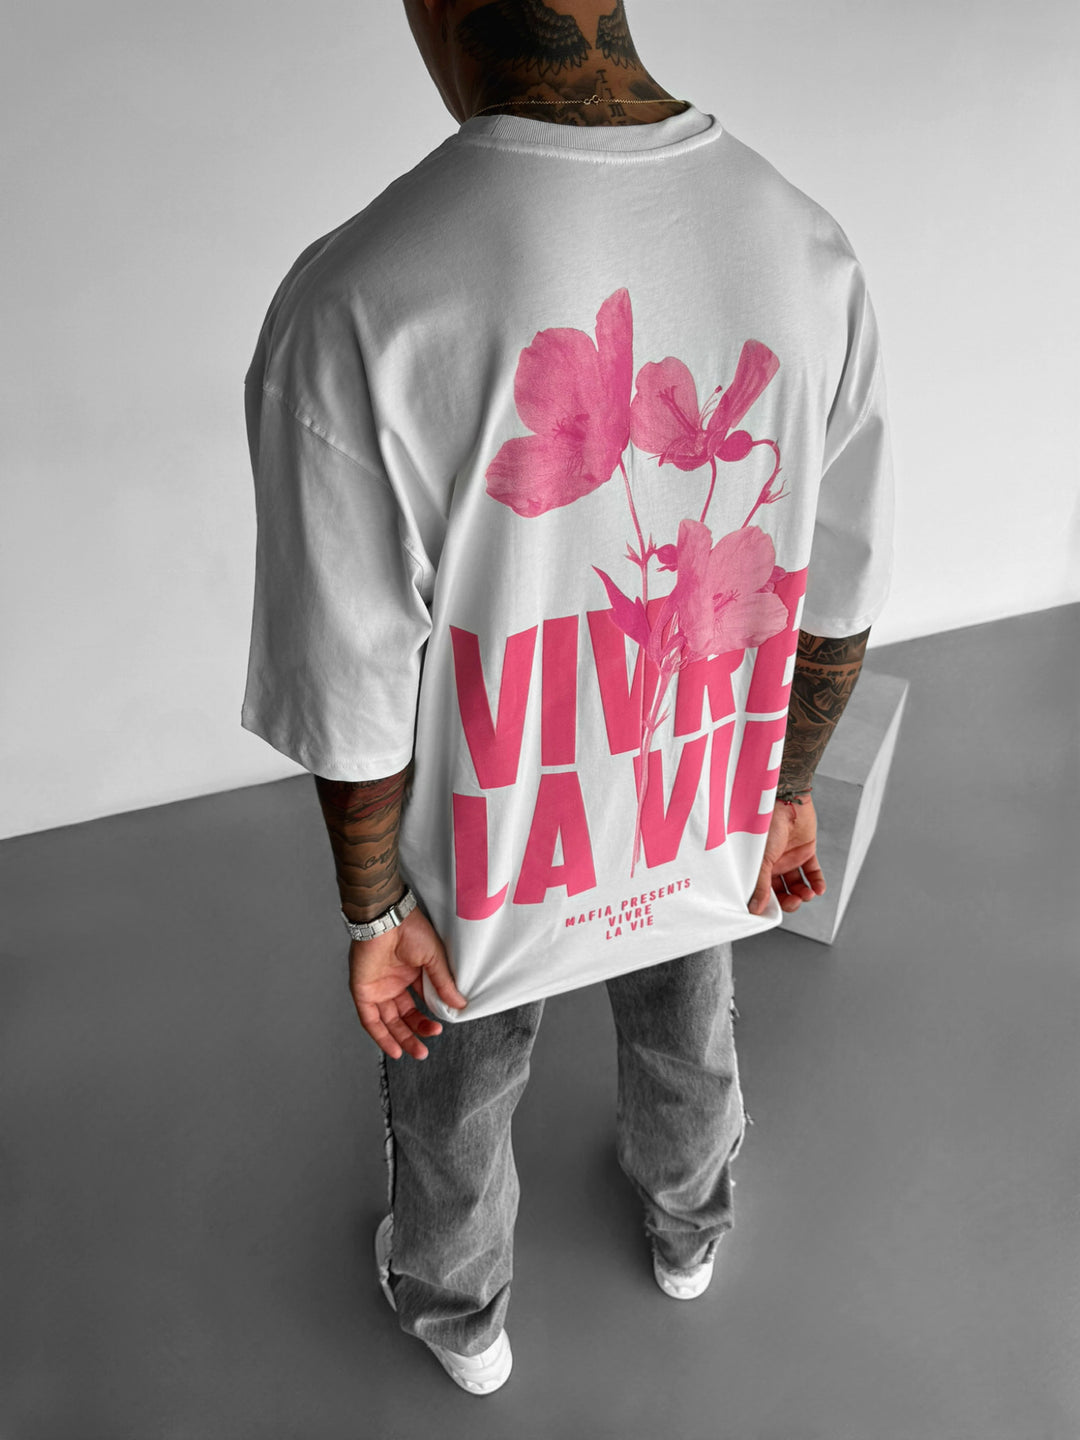 Oversize Vivre la Vie T-shirt - Ecru and Pouder